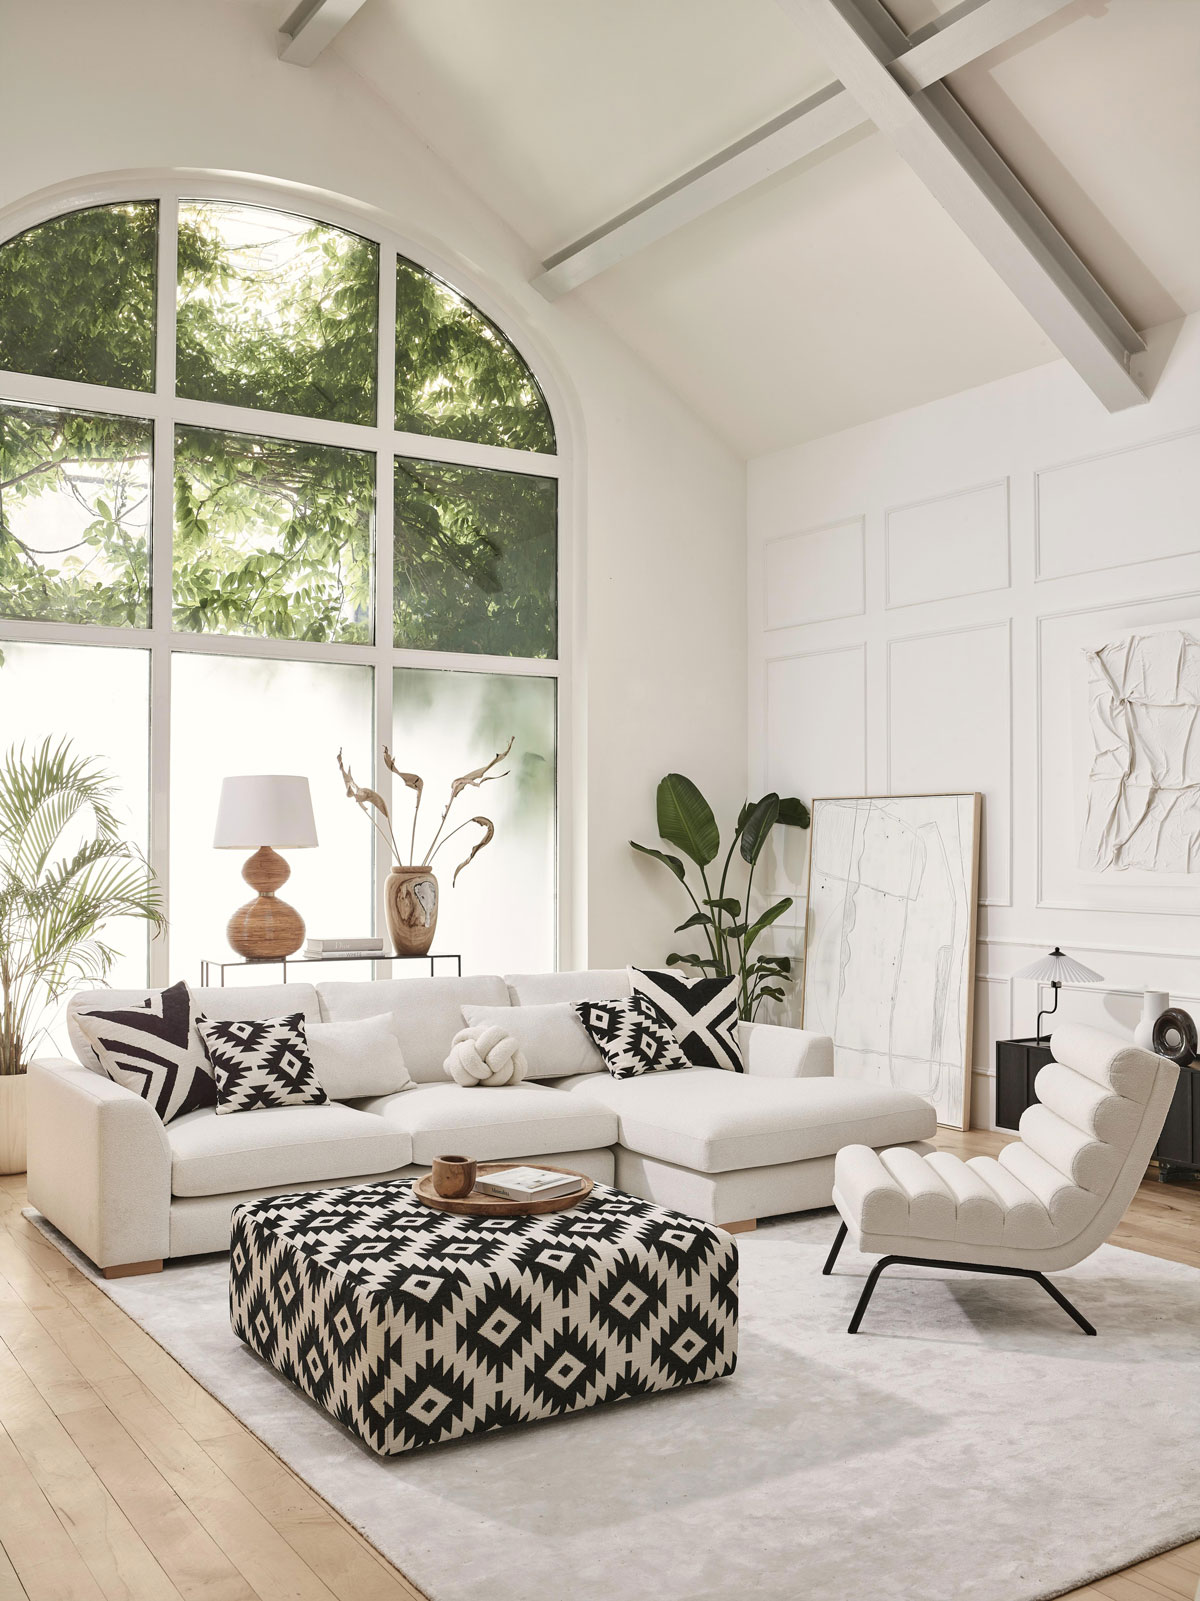 moderná obývačka v bielej farbe s jednoduchou sedačkou do L a vzorovaným čiernobielym veľkým taburetom